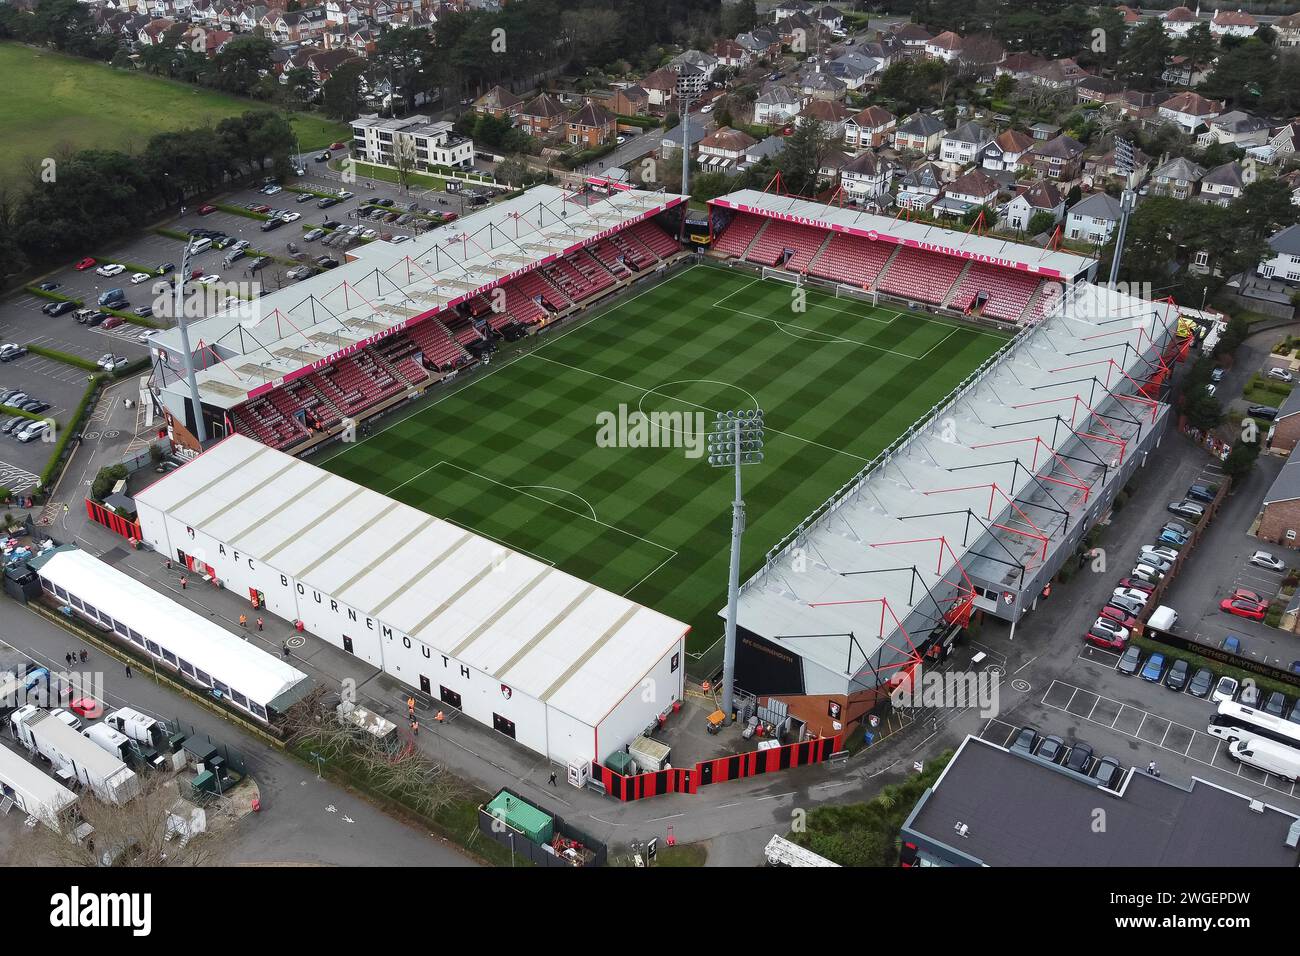 Aus der Vogelperspektive das Vitality Stadium im Kings Park in Bournemouth in Dorset, dem Heimstadion des Premier League-Fußballclubs AFC Bournemouth. Stockfoto